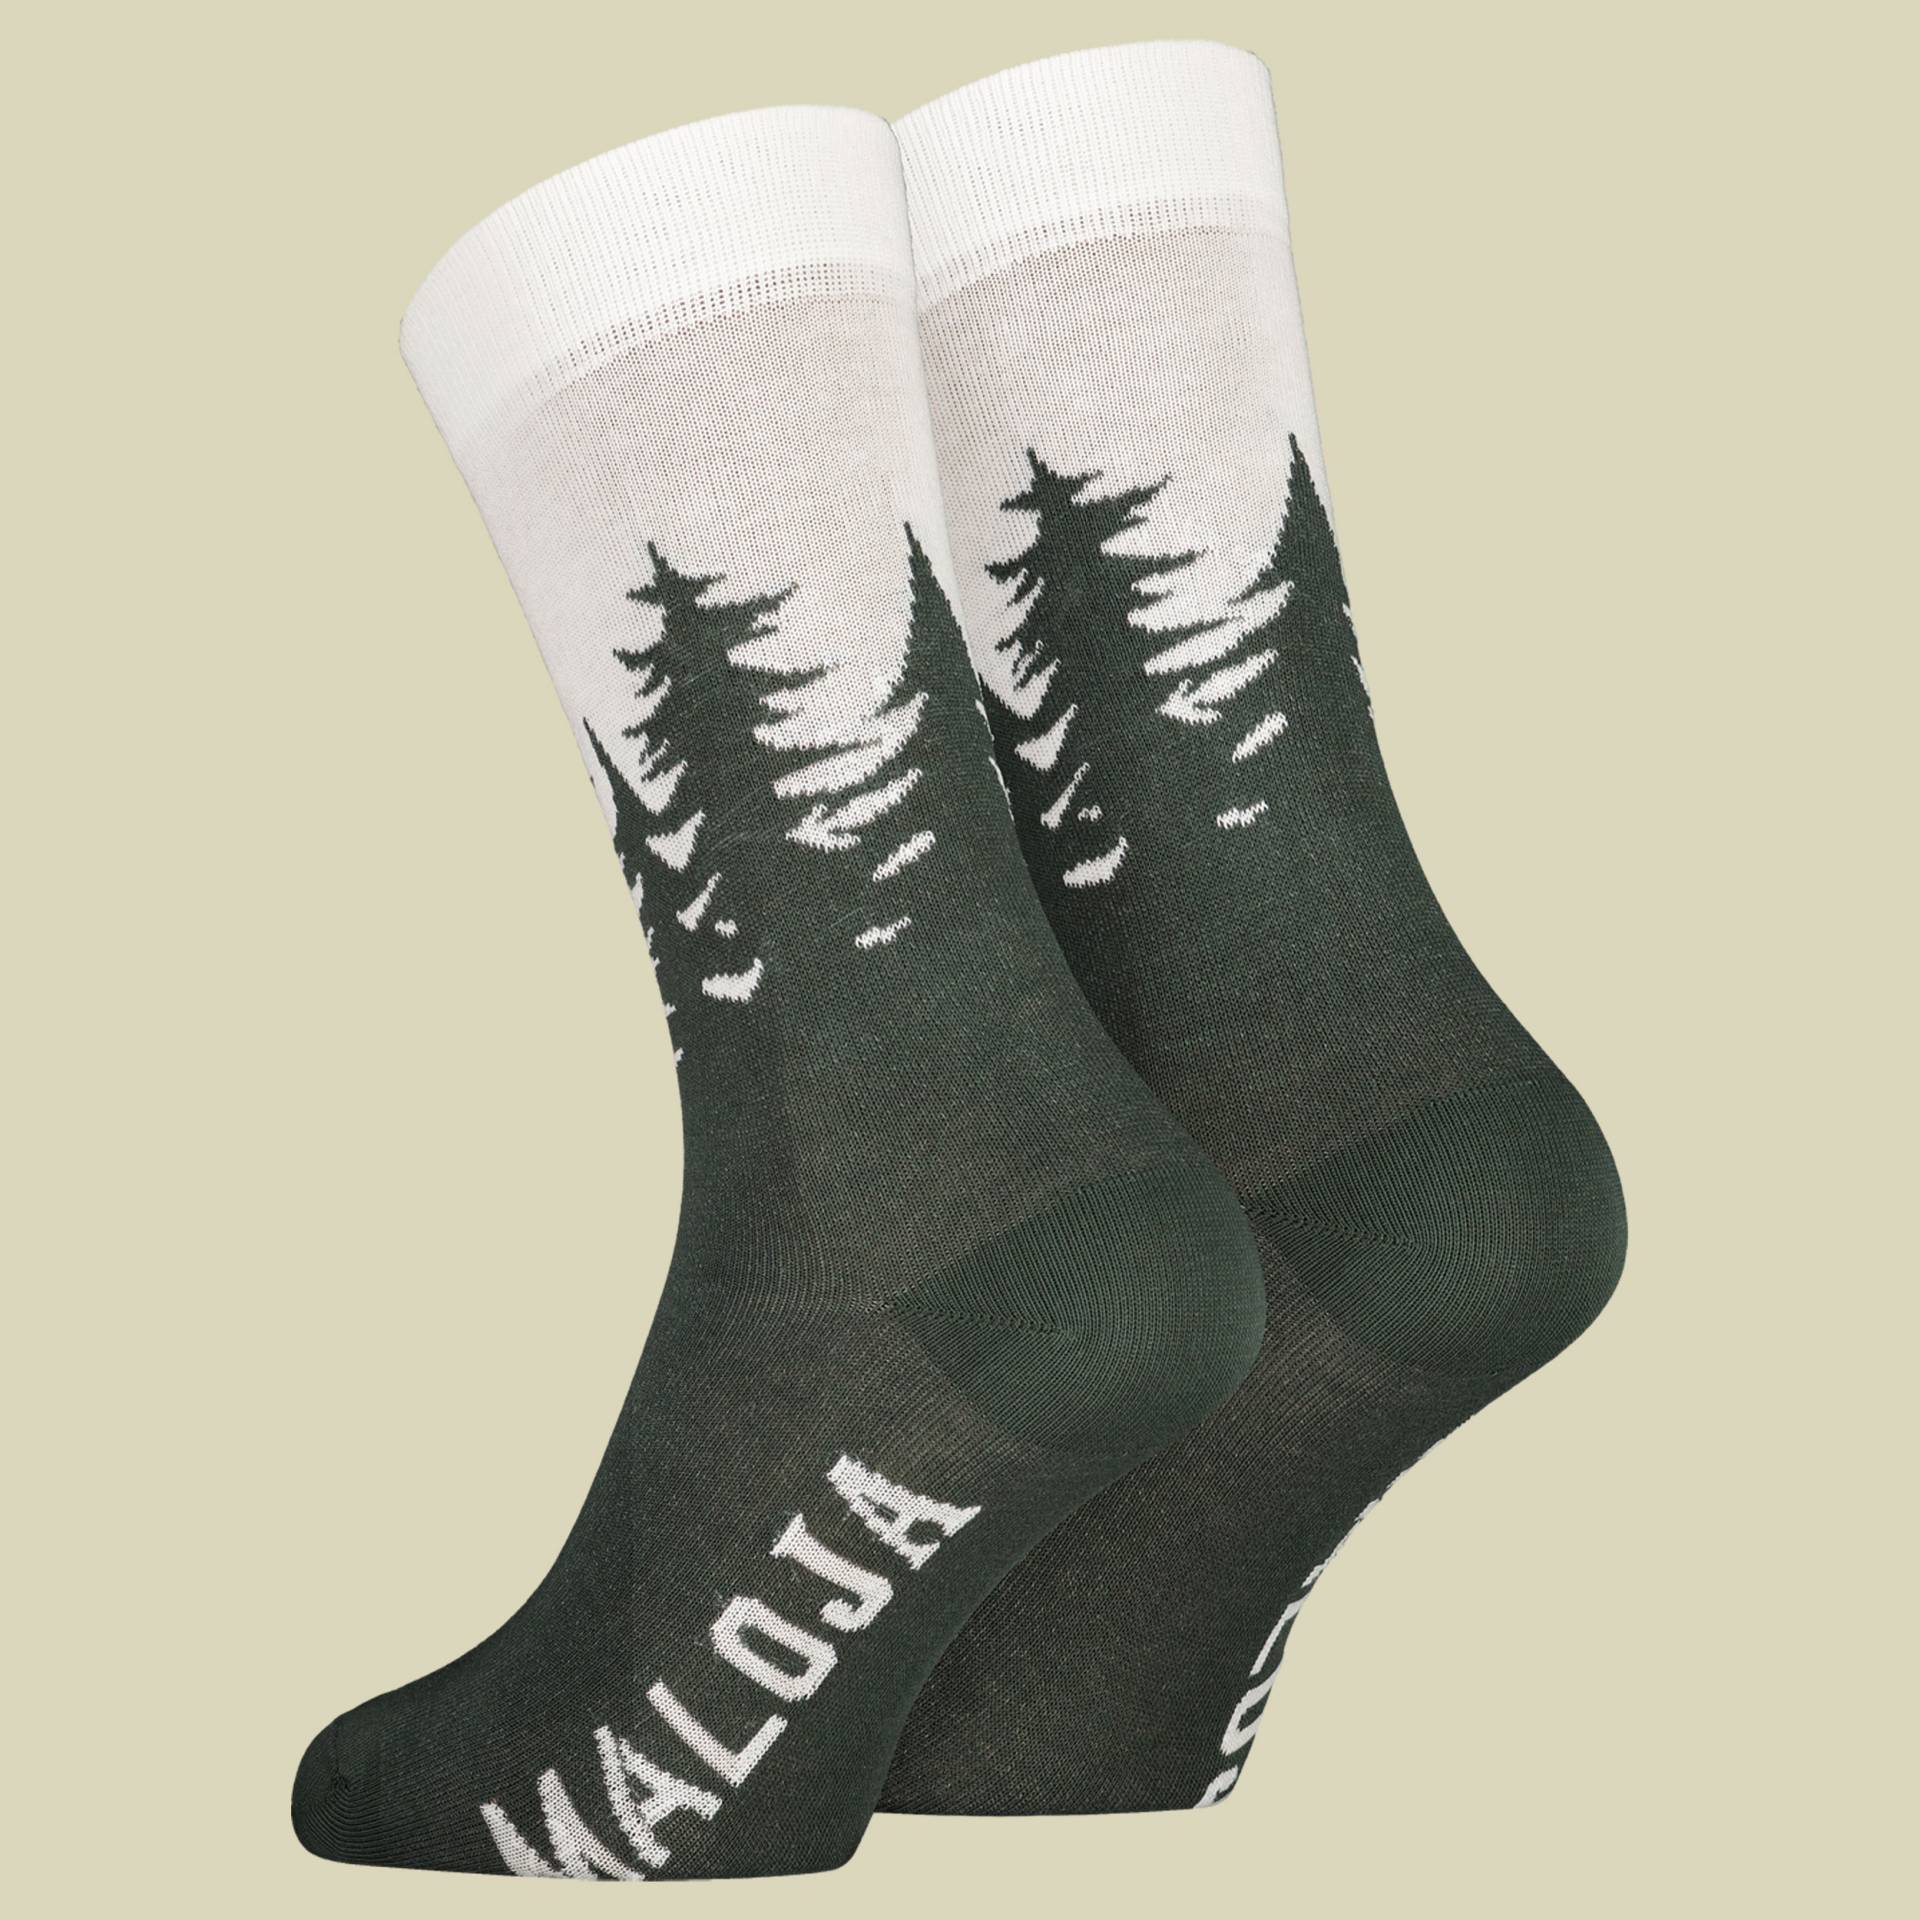 LabanM. Socks Men Größe 39-42 Farbe deep forest von Maloja